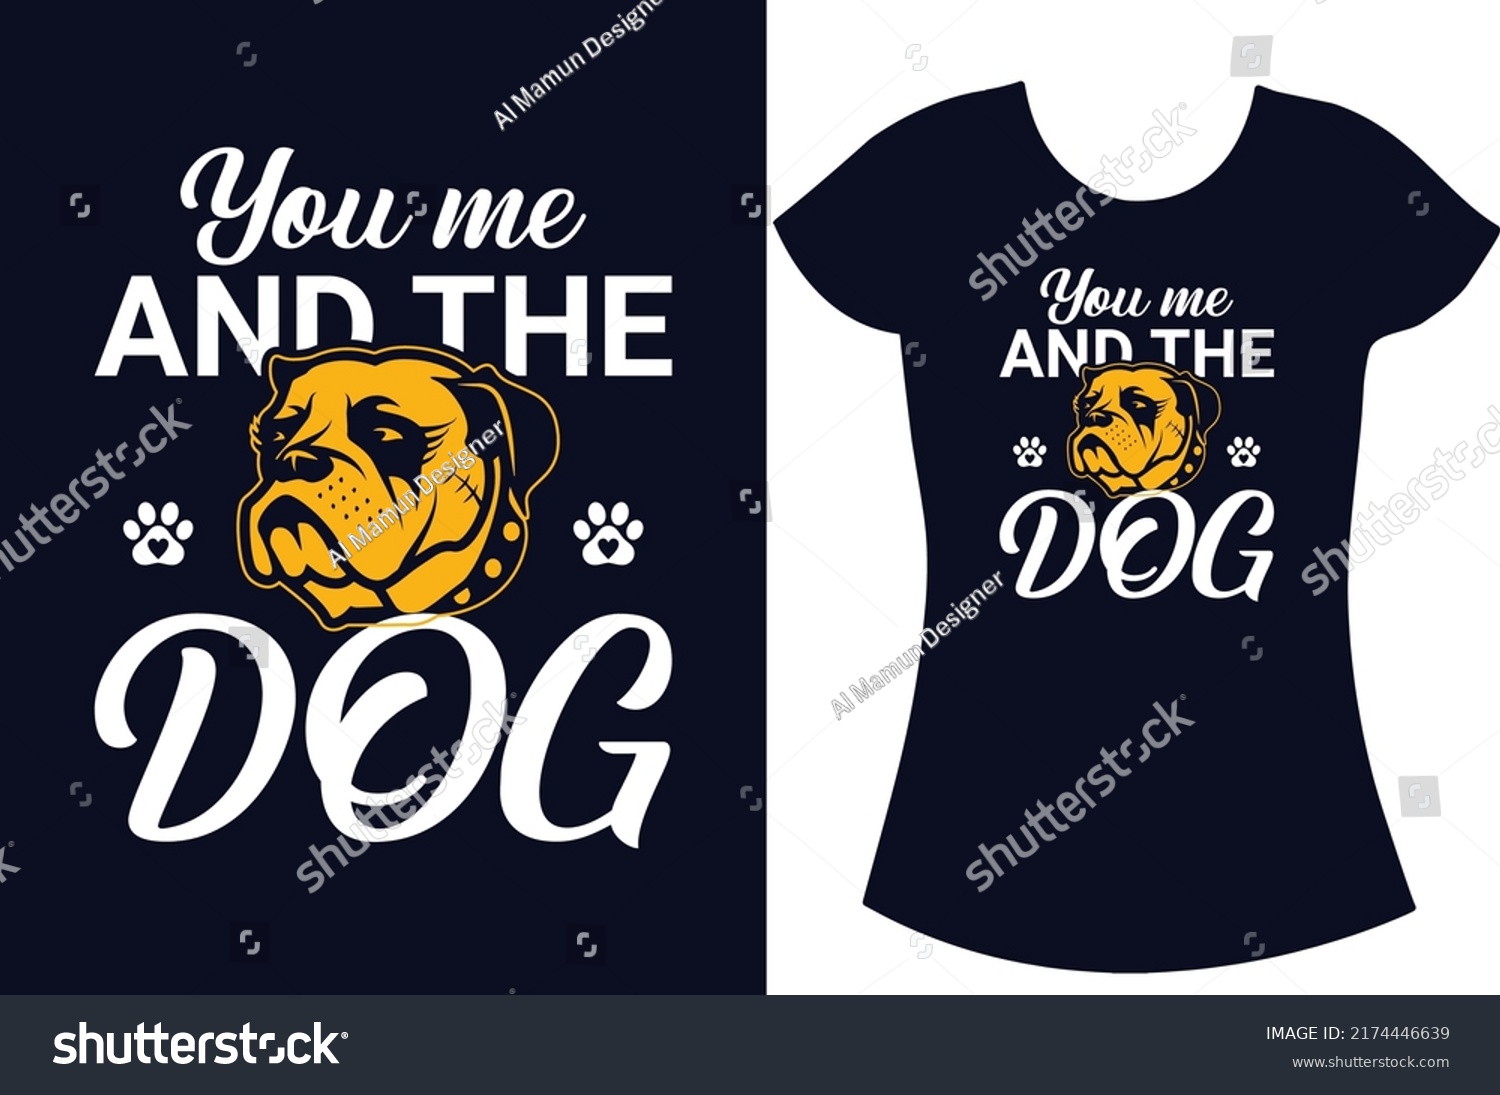 SVG of Dog svg typography T shirt design. Dog Lover t shirt design for the gift. Dog funny t shirt design. Dog t shirt for women.  svg